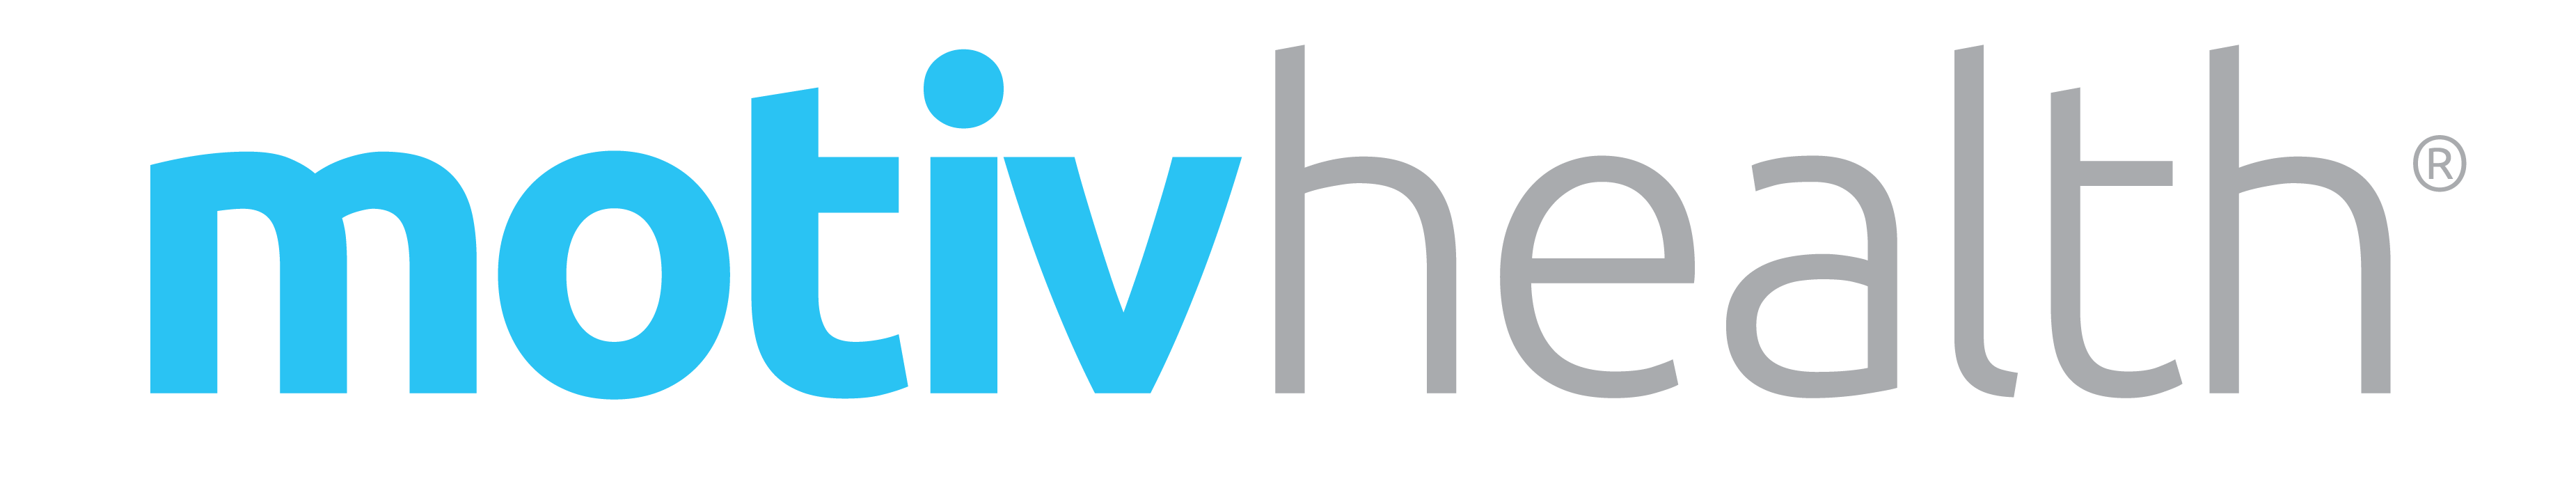 motivhealth-logo